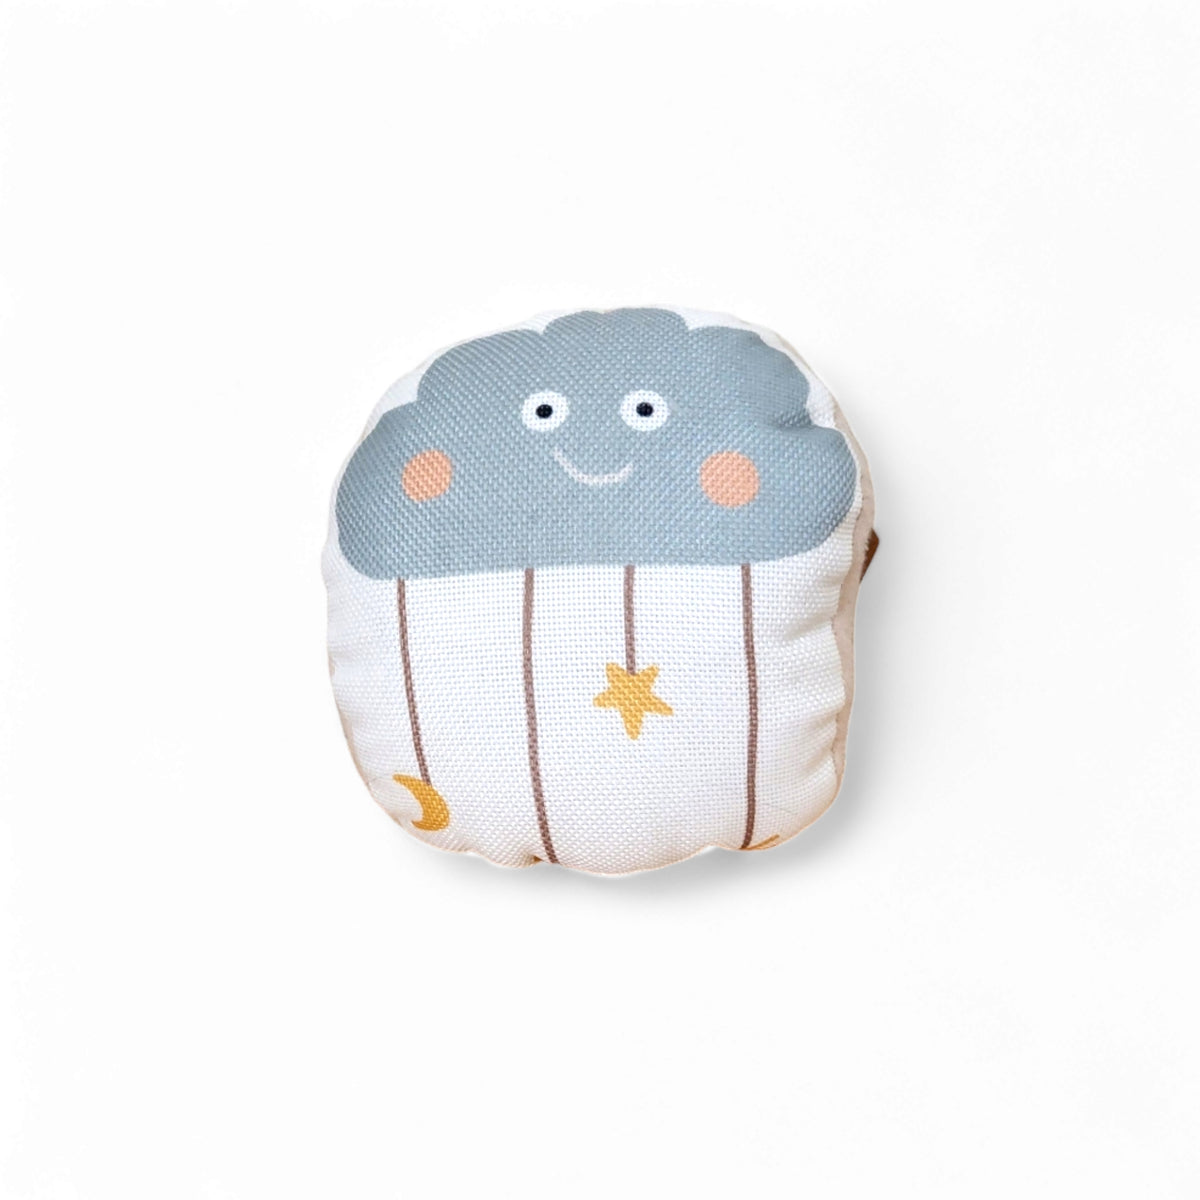 Cloud Dreamcatcher Cuddle Plush Cushion